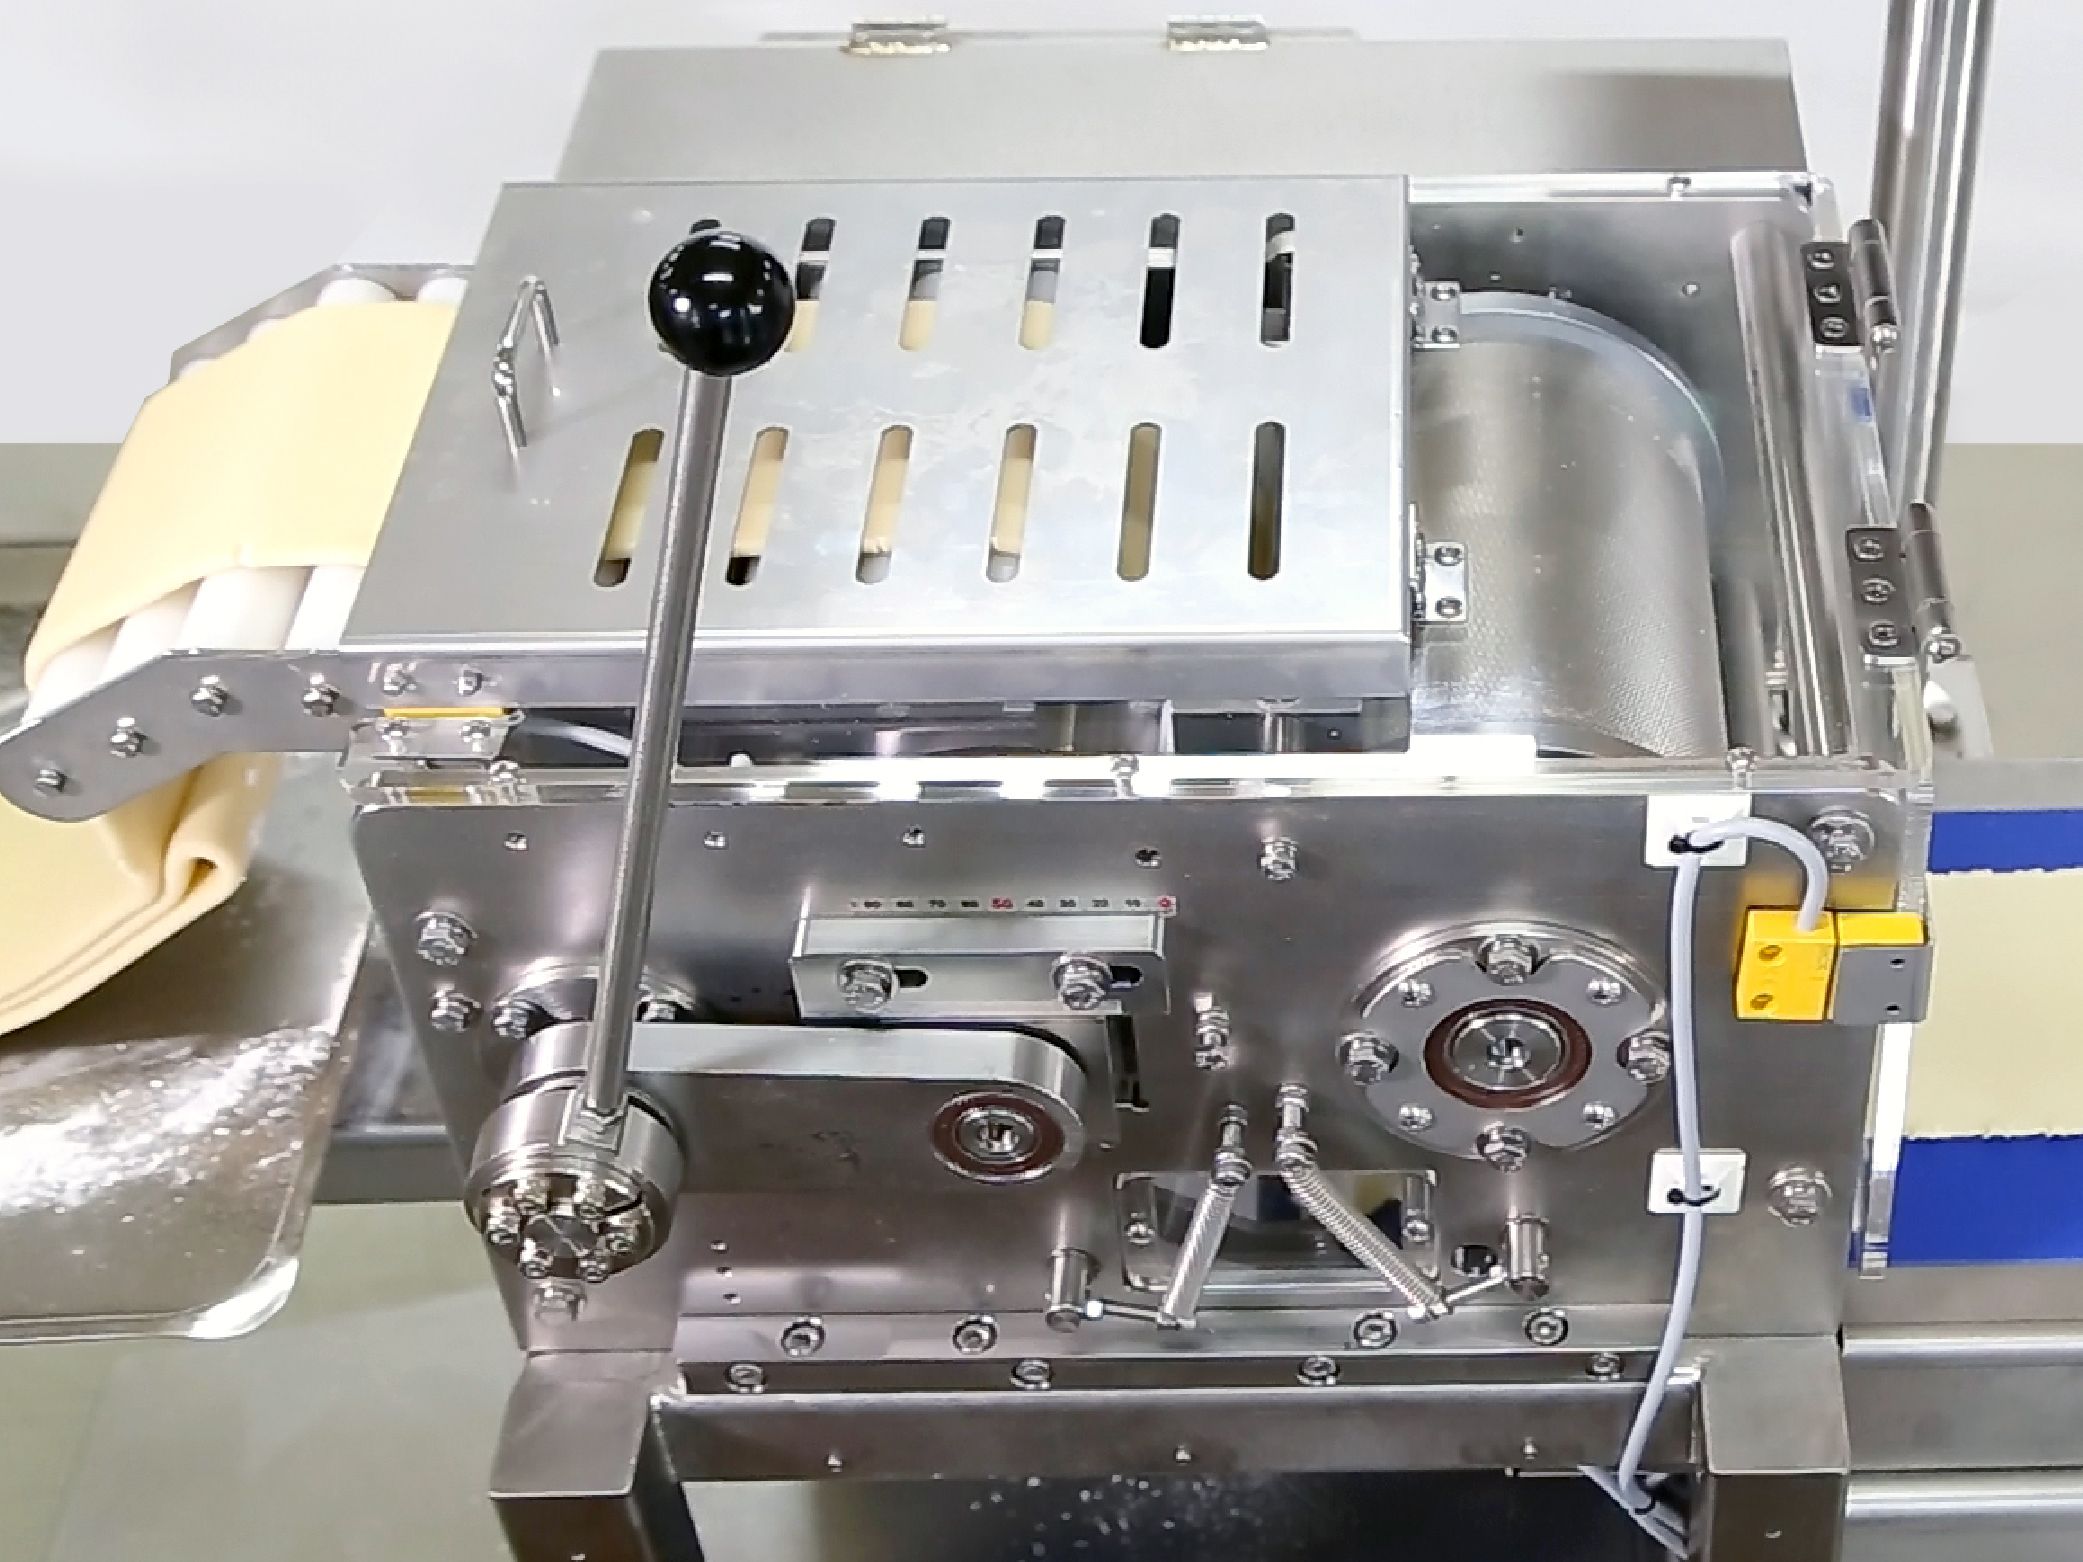 Máquina de empanadas y solución de producción  Fabricante de Máquina  Automática de Empanadas - ANKO FOOD MACHINE CO., LTD.